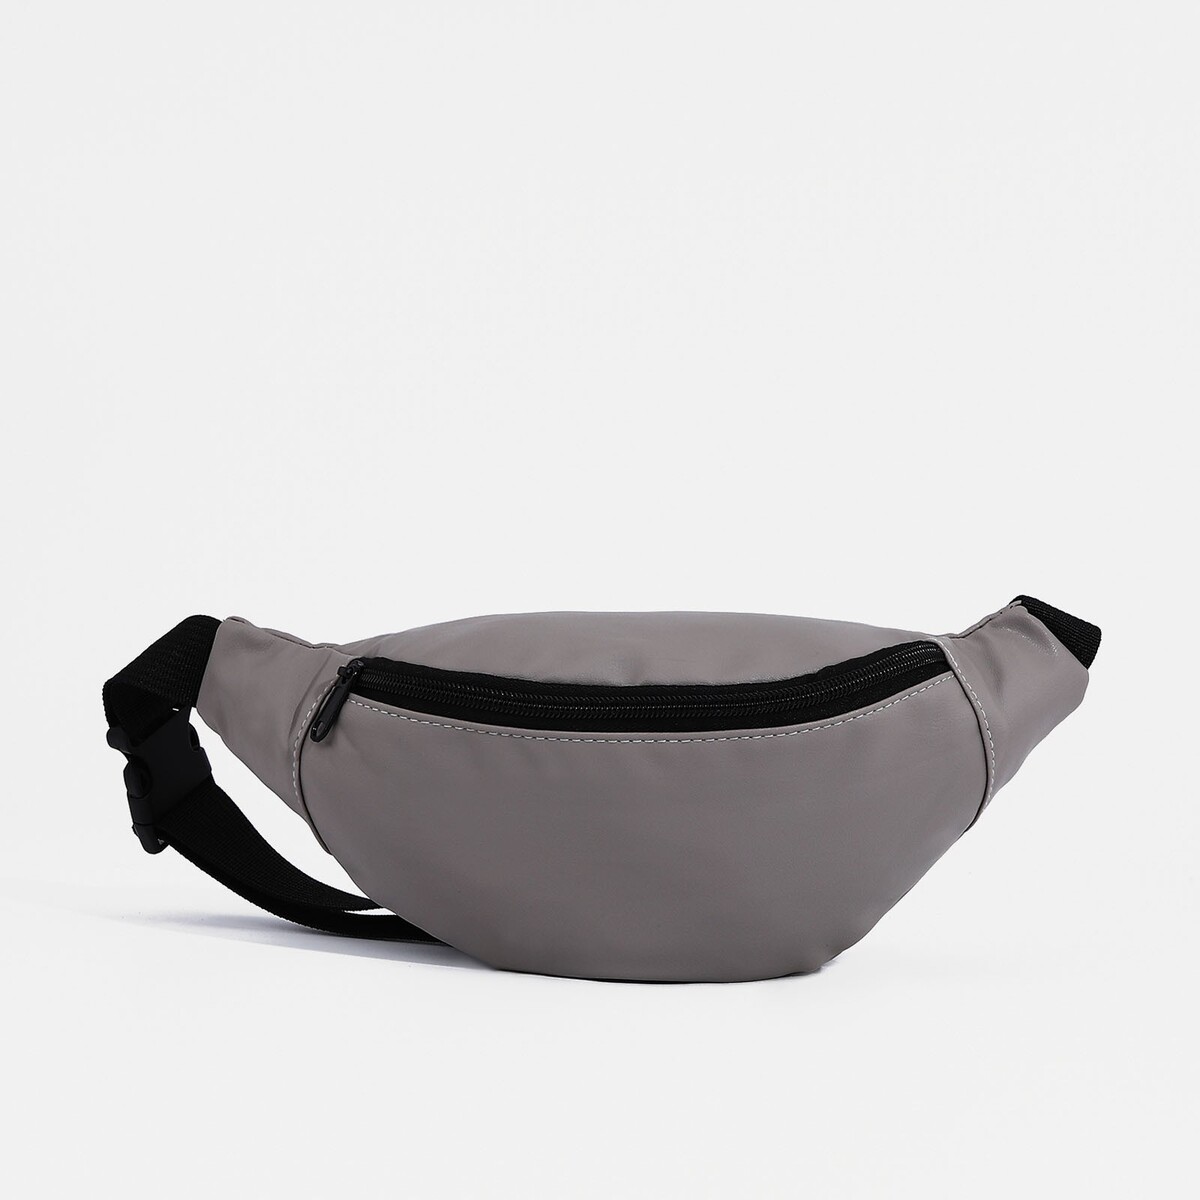 Поясная сумка на молнии, наружный карман, цвет серый поясная сумка рюкзак tatonka hip sling pack серый